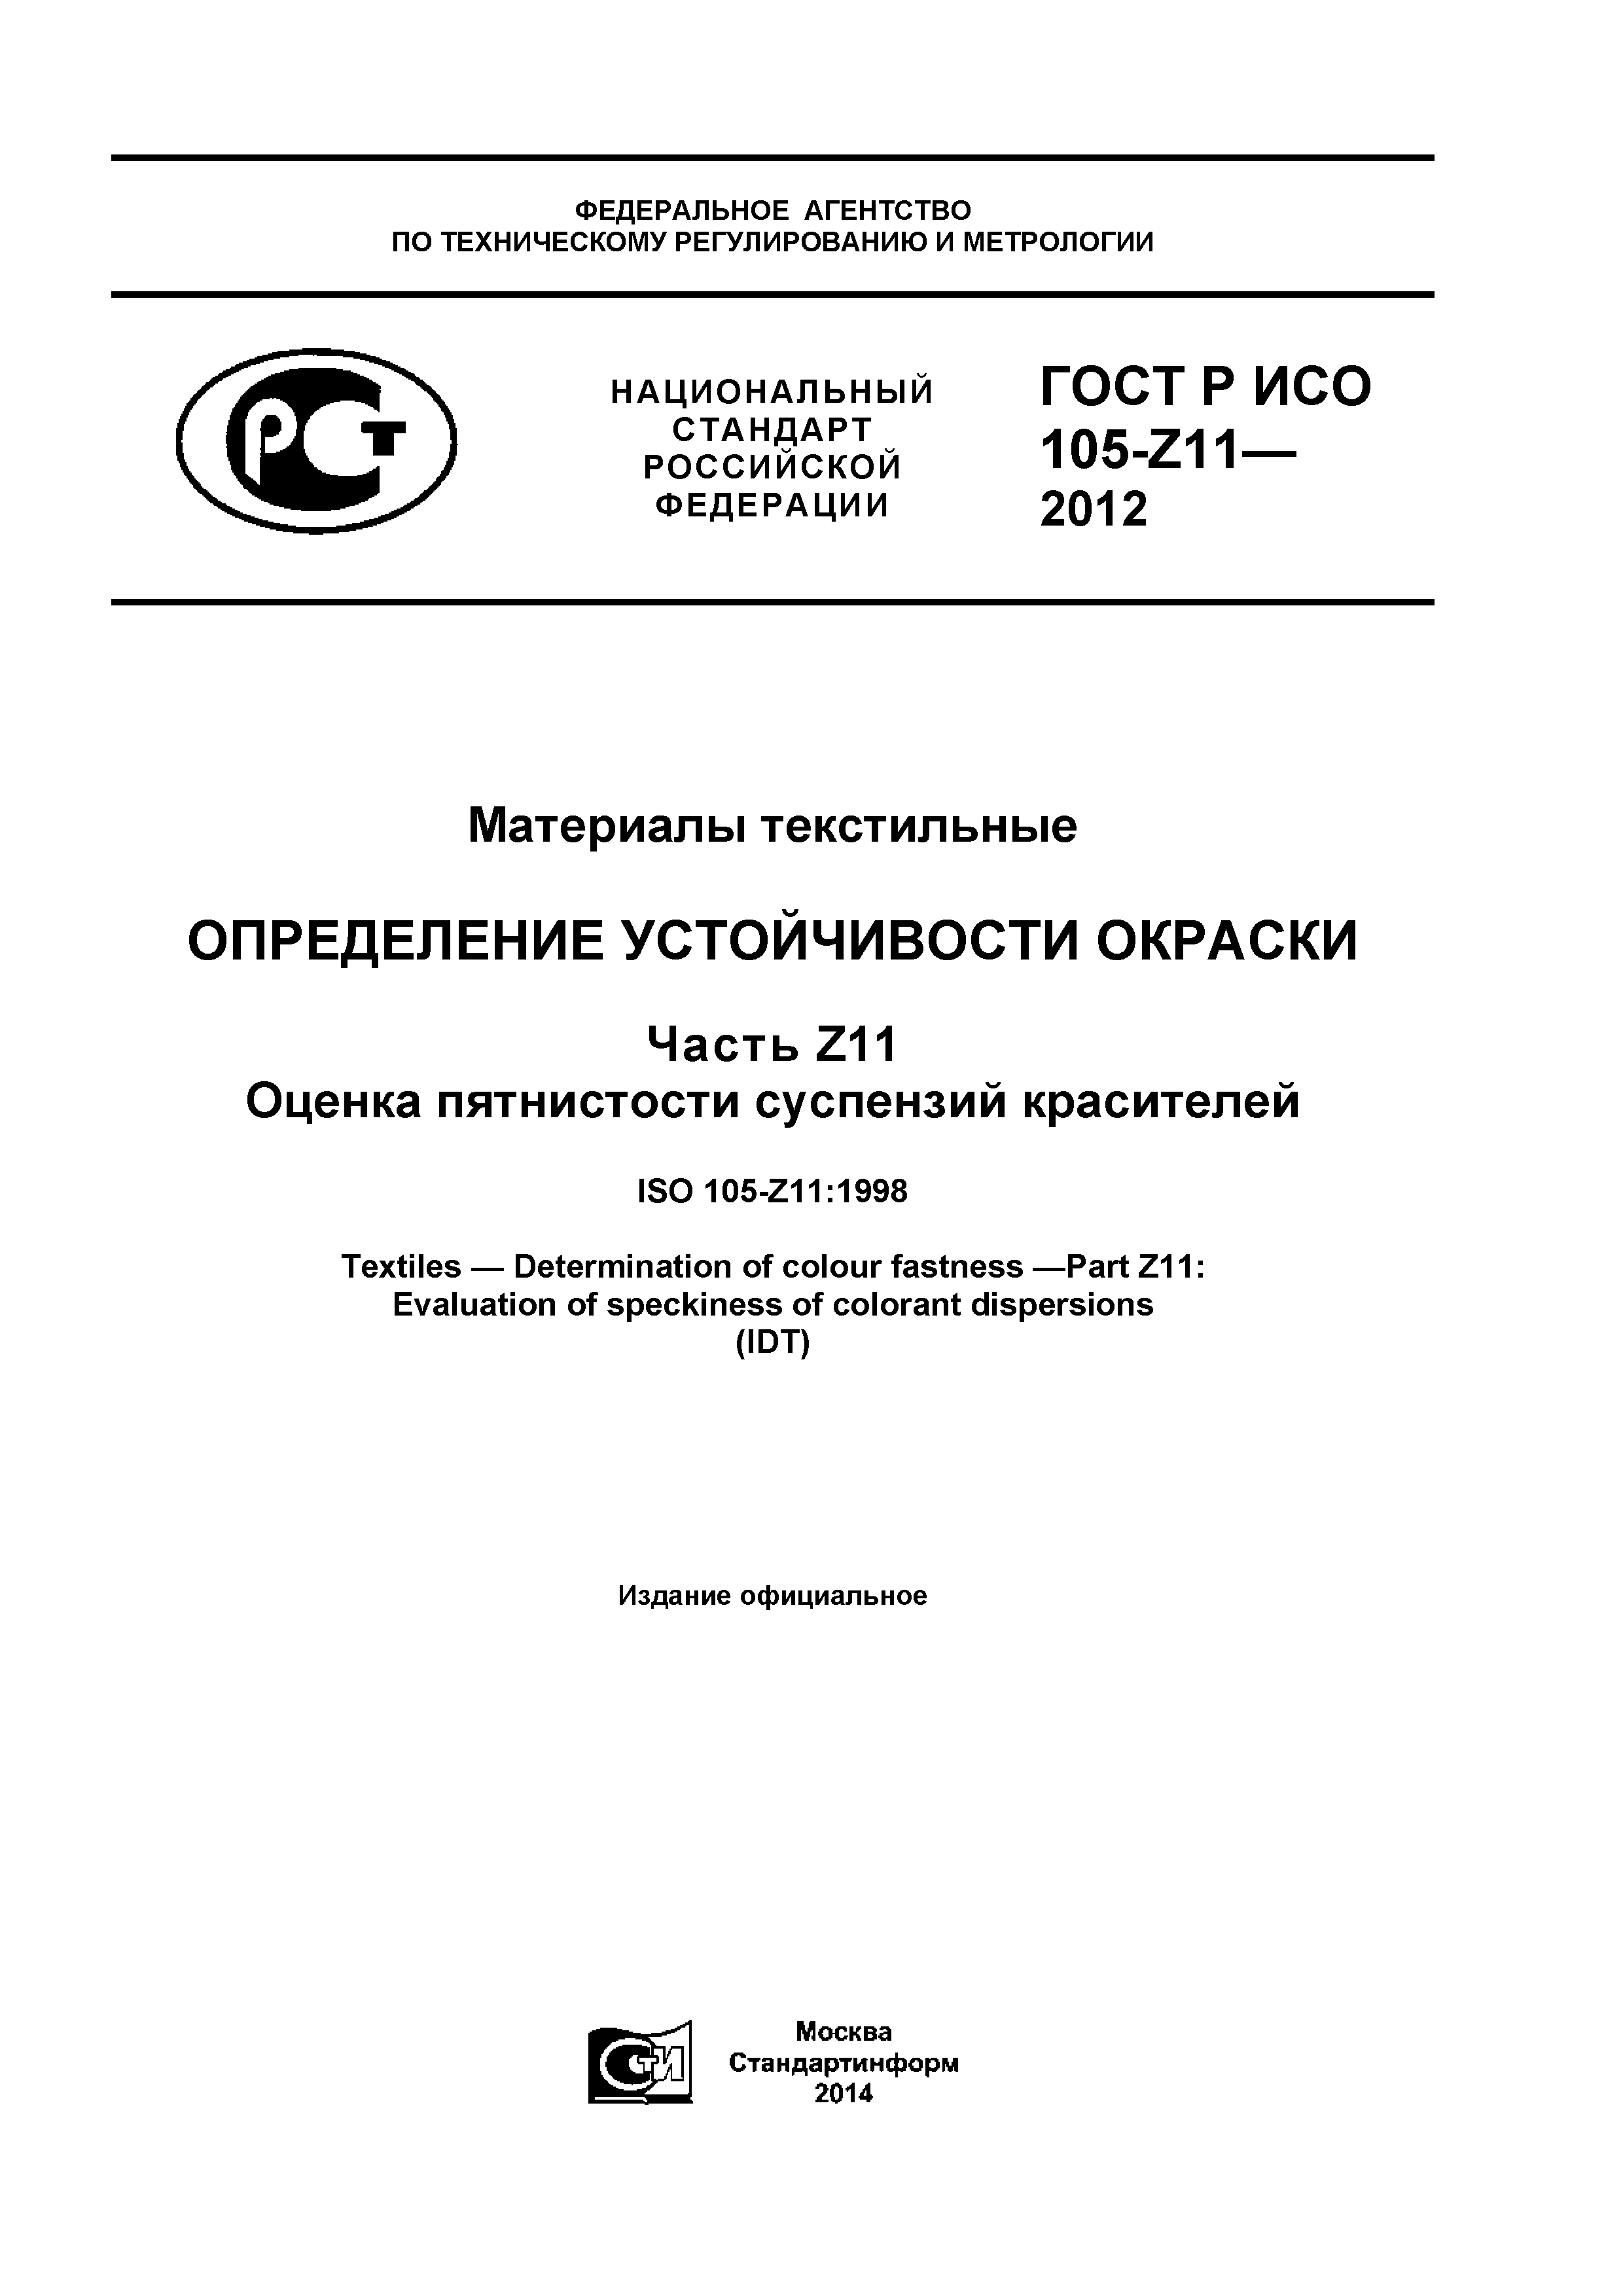 ГОСТ Р ИСО 105-Z11-2012